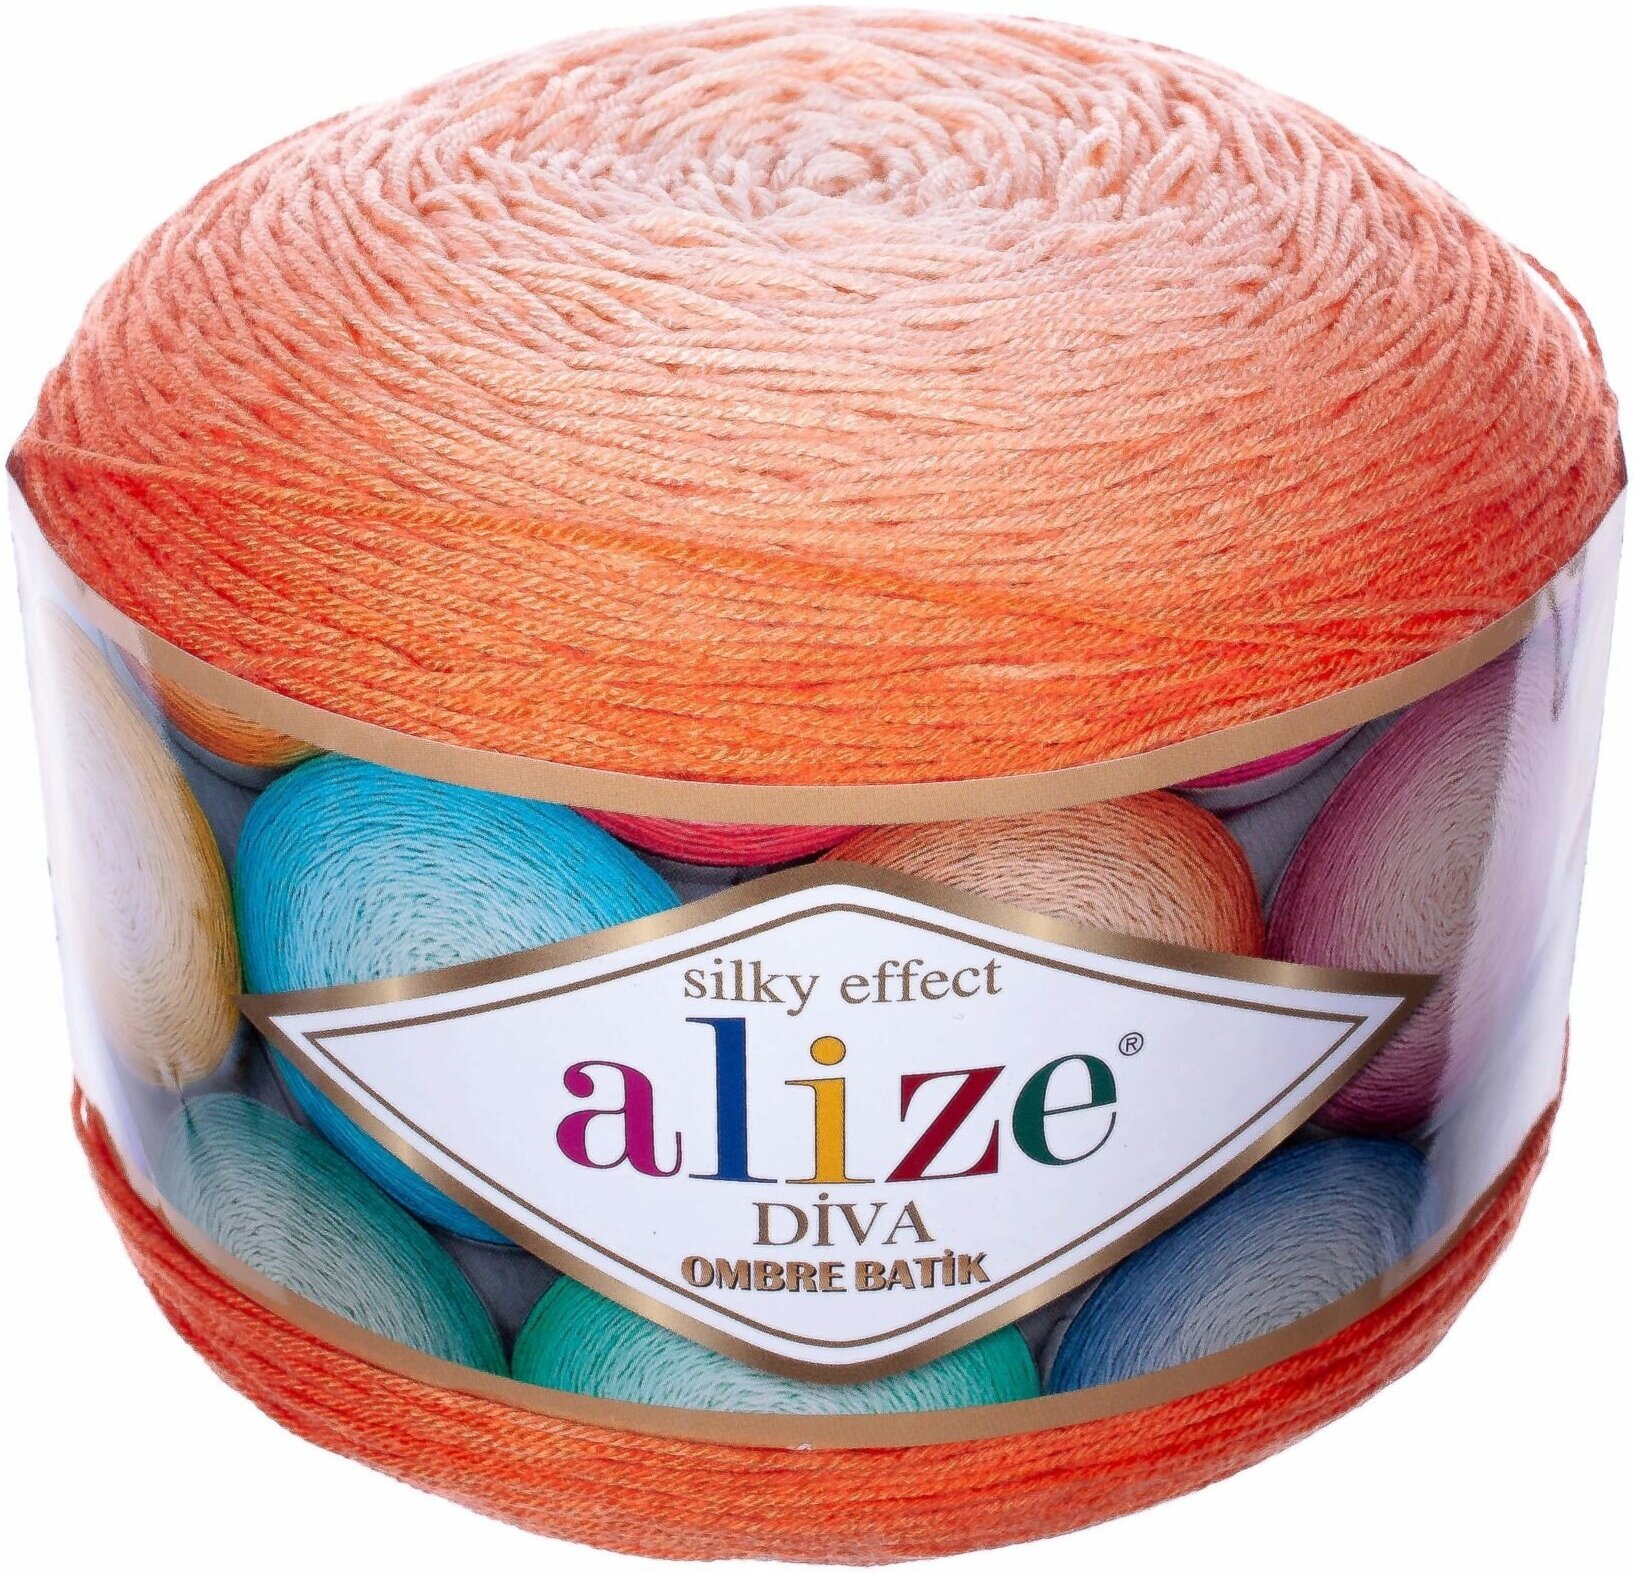 Пряжа Alize Diva ombre Batik оранжевый (7413), 100%микрофибра, 875м, 250г, 1шт